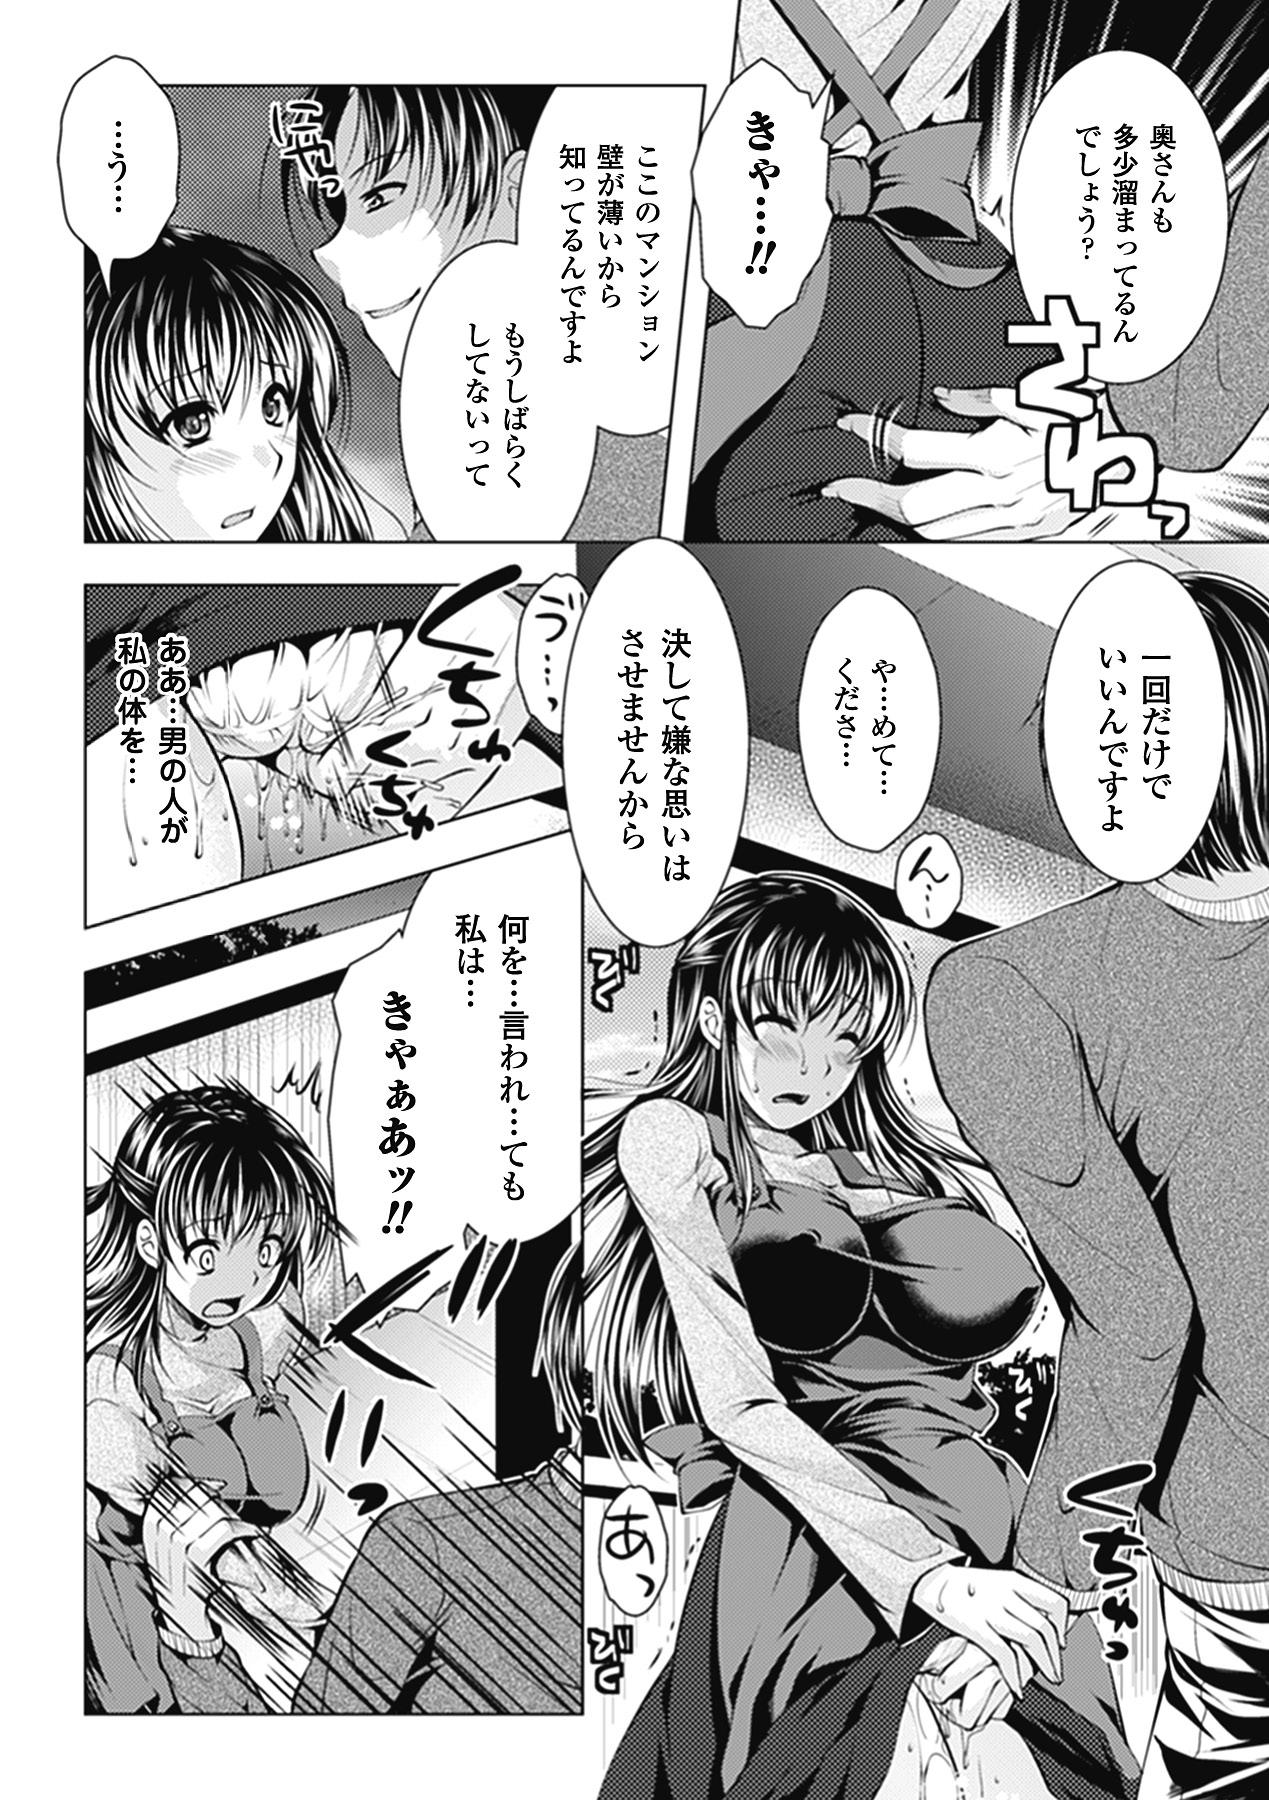 Girl Sucking Dick Hitozuma Anthology Comics Vol. 1 Male - Page 8